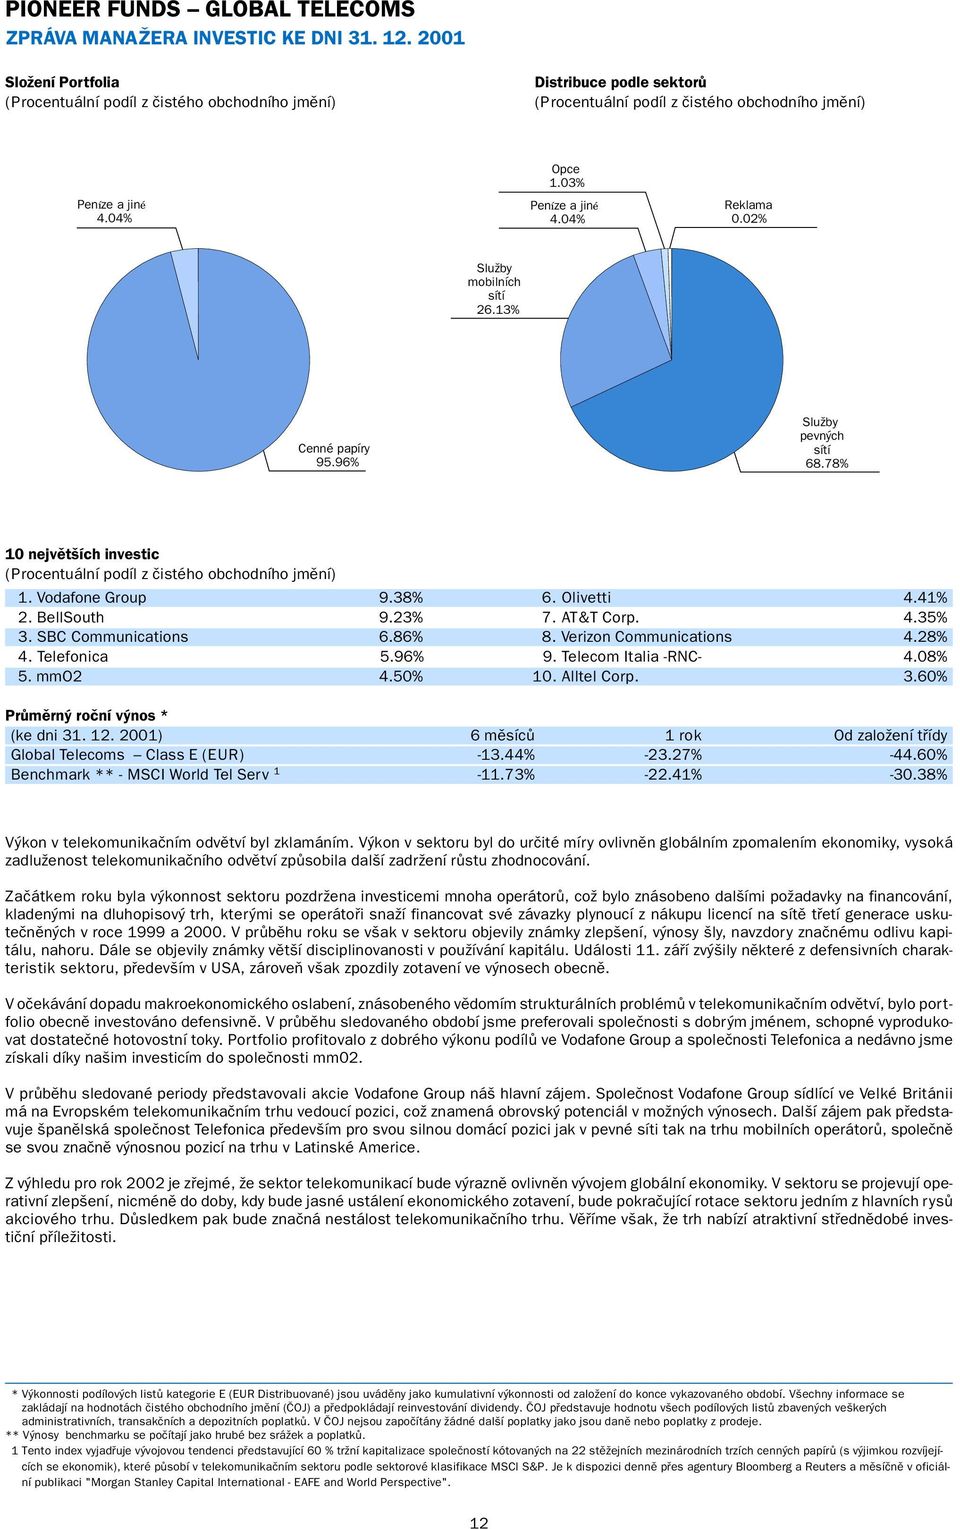 SBC Communications 6.86% 8. Verizon Communications 4.28% 4. Telefonica 5.96% 9. Telecom Italia -RNC- 4.08% 5. mmo2 4.50% 10. Alltel Corp. 3.60% Průměrný roční výnos * (ke dni 31. 12.